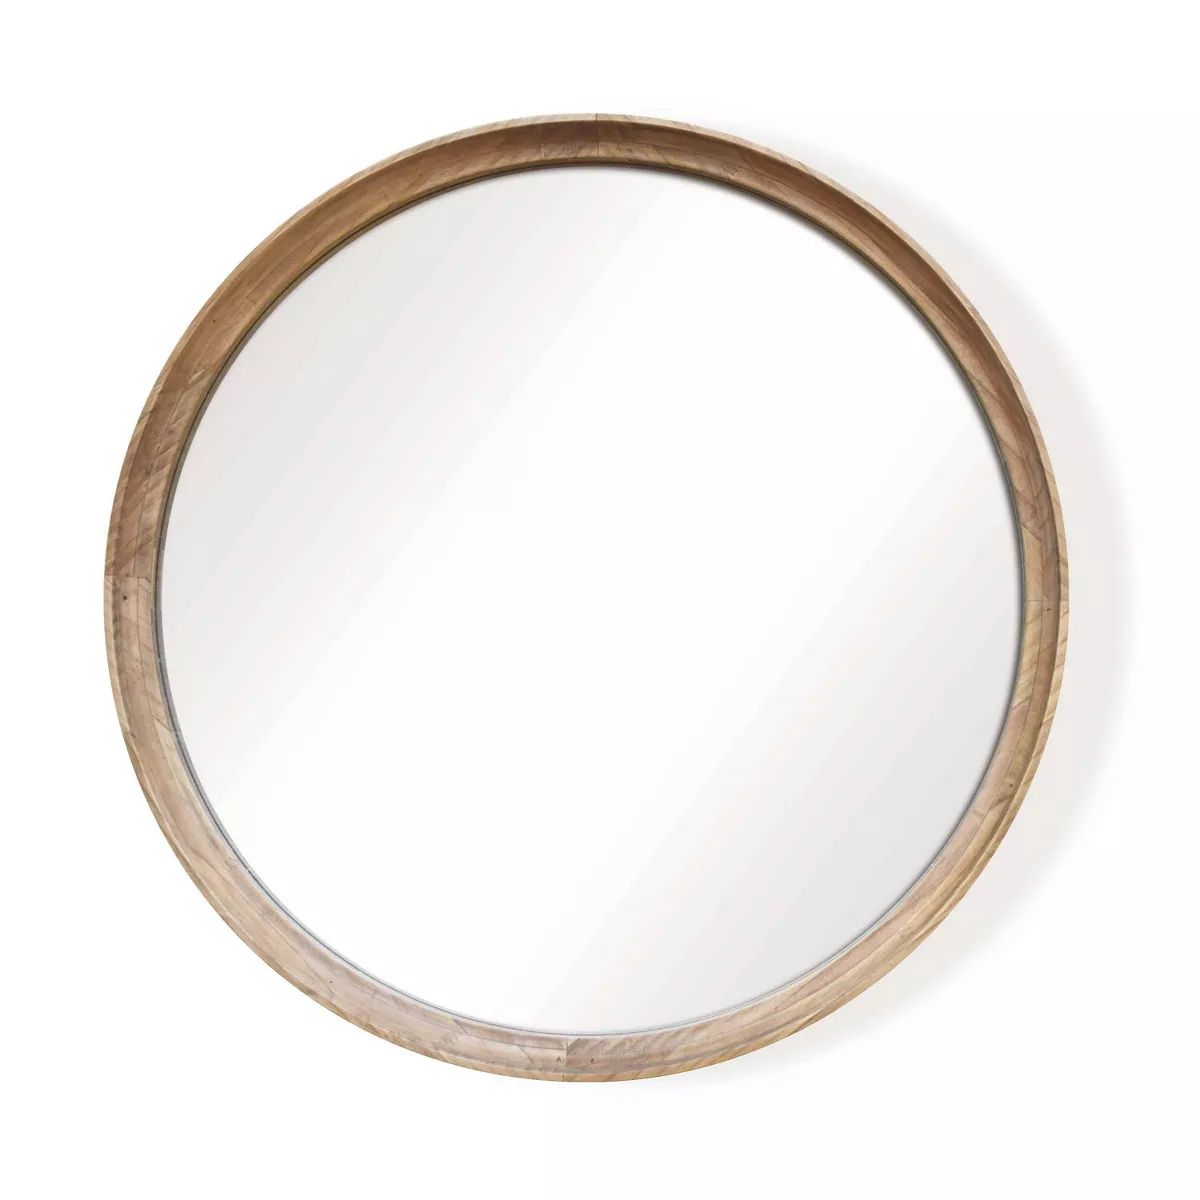 26" Classic Wood Round Mirror - Threshold™ | Target